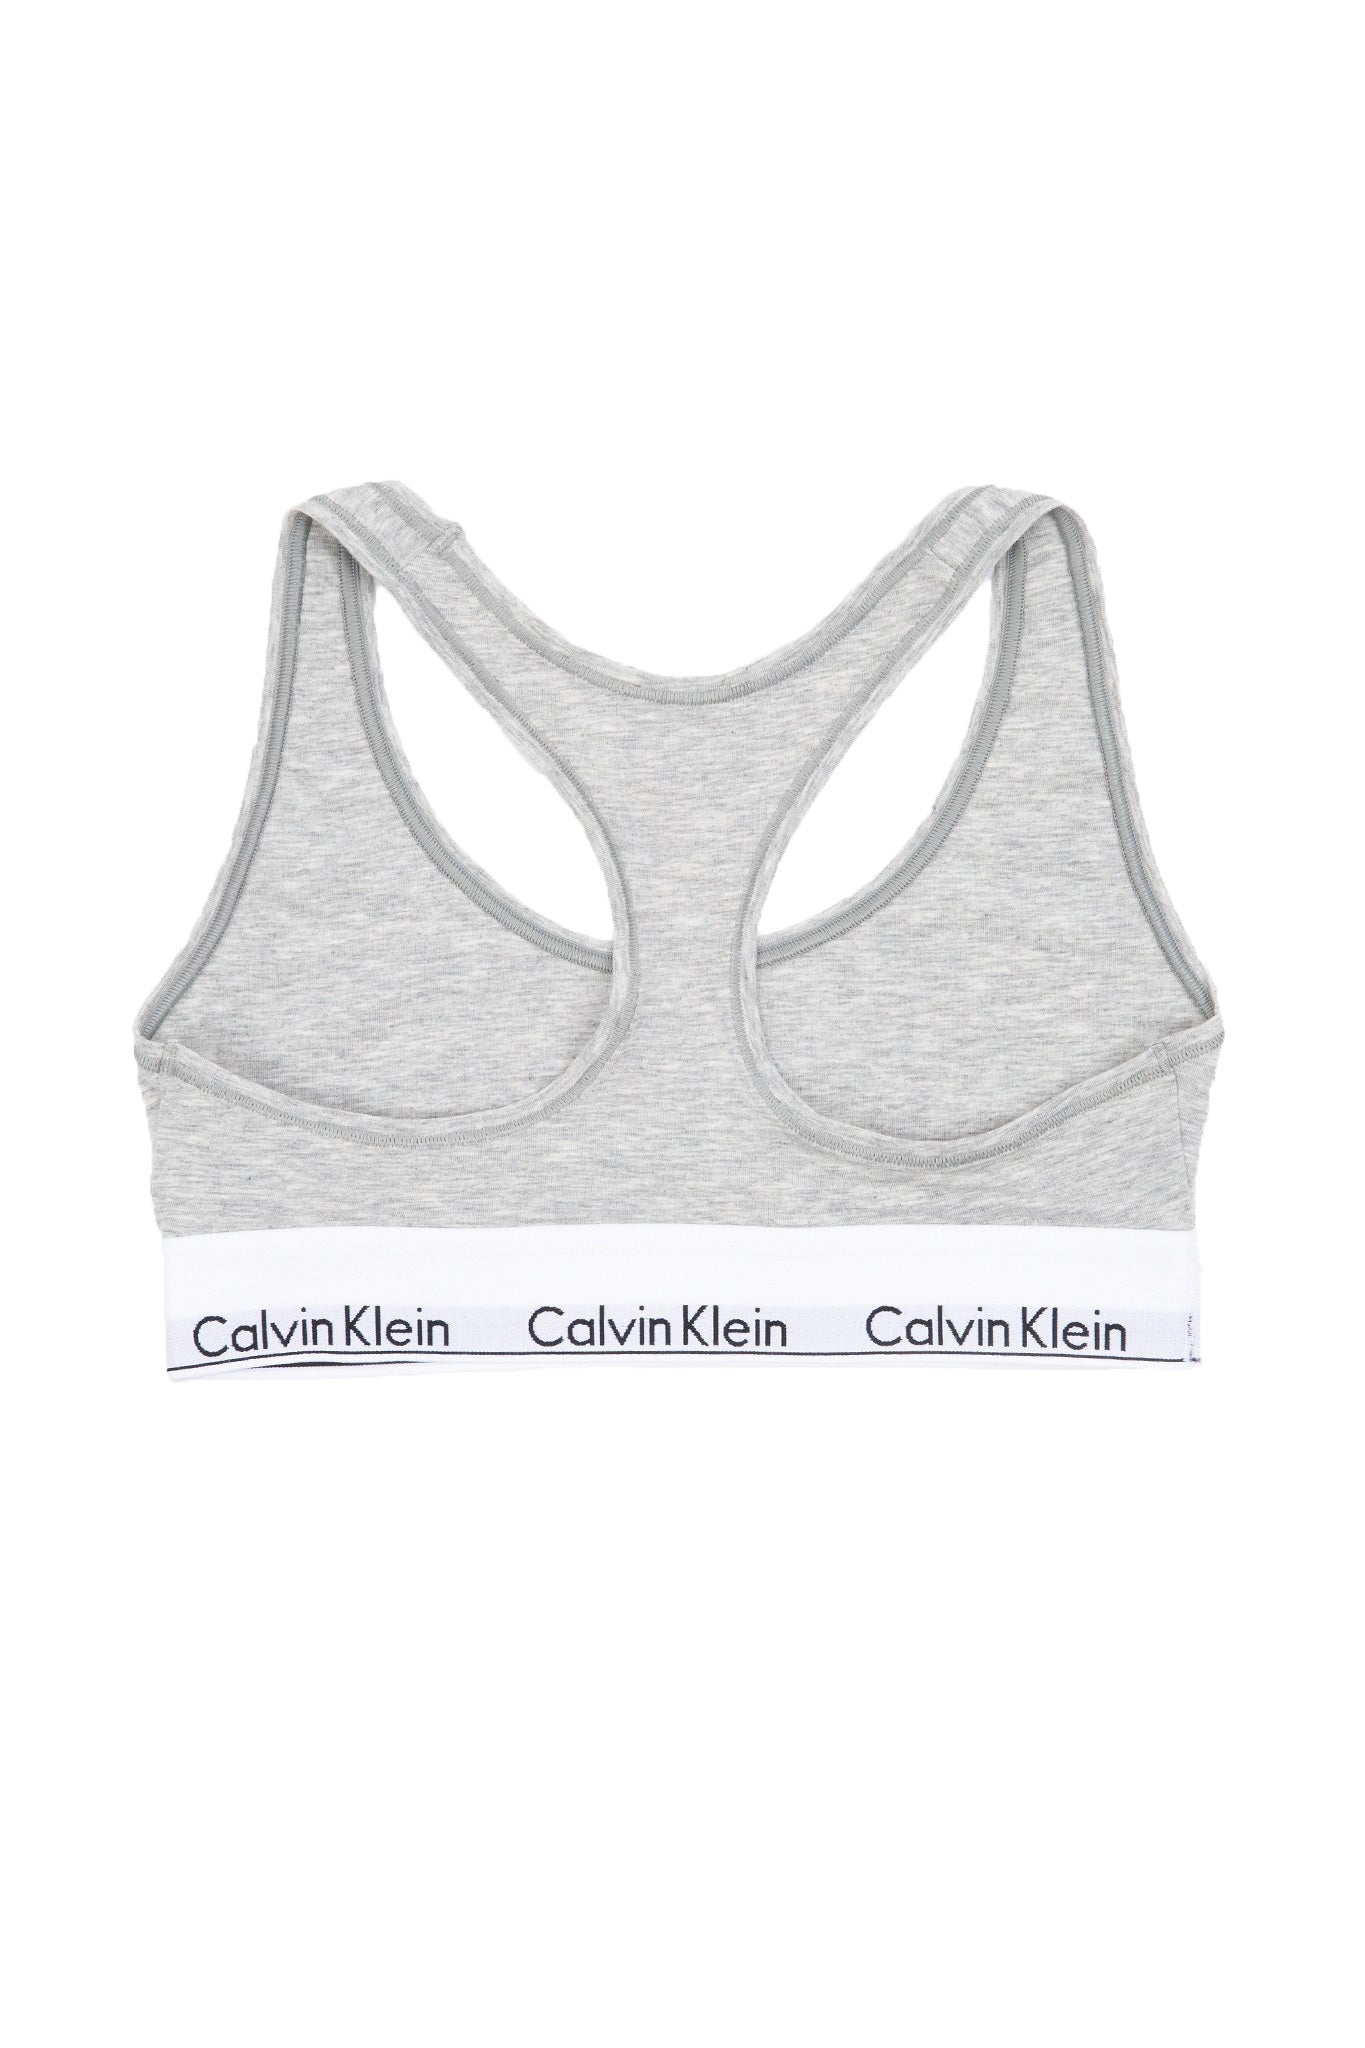 Calvin Klein, Modern Cotton Unlined Bralette